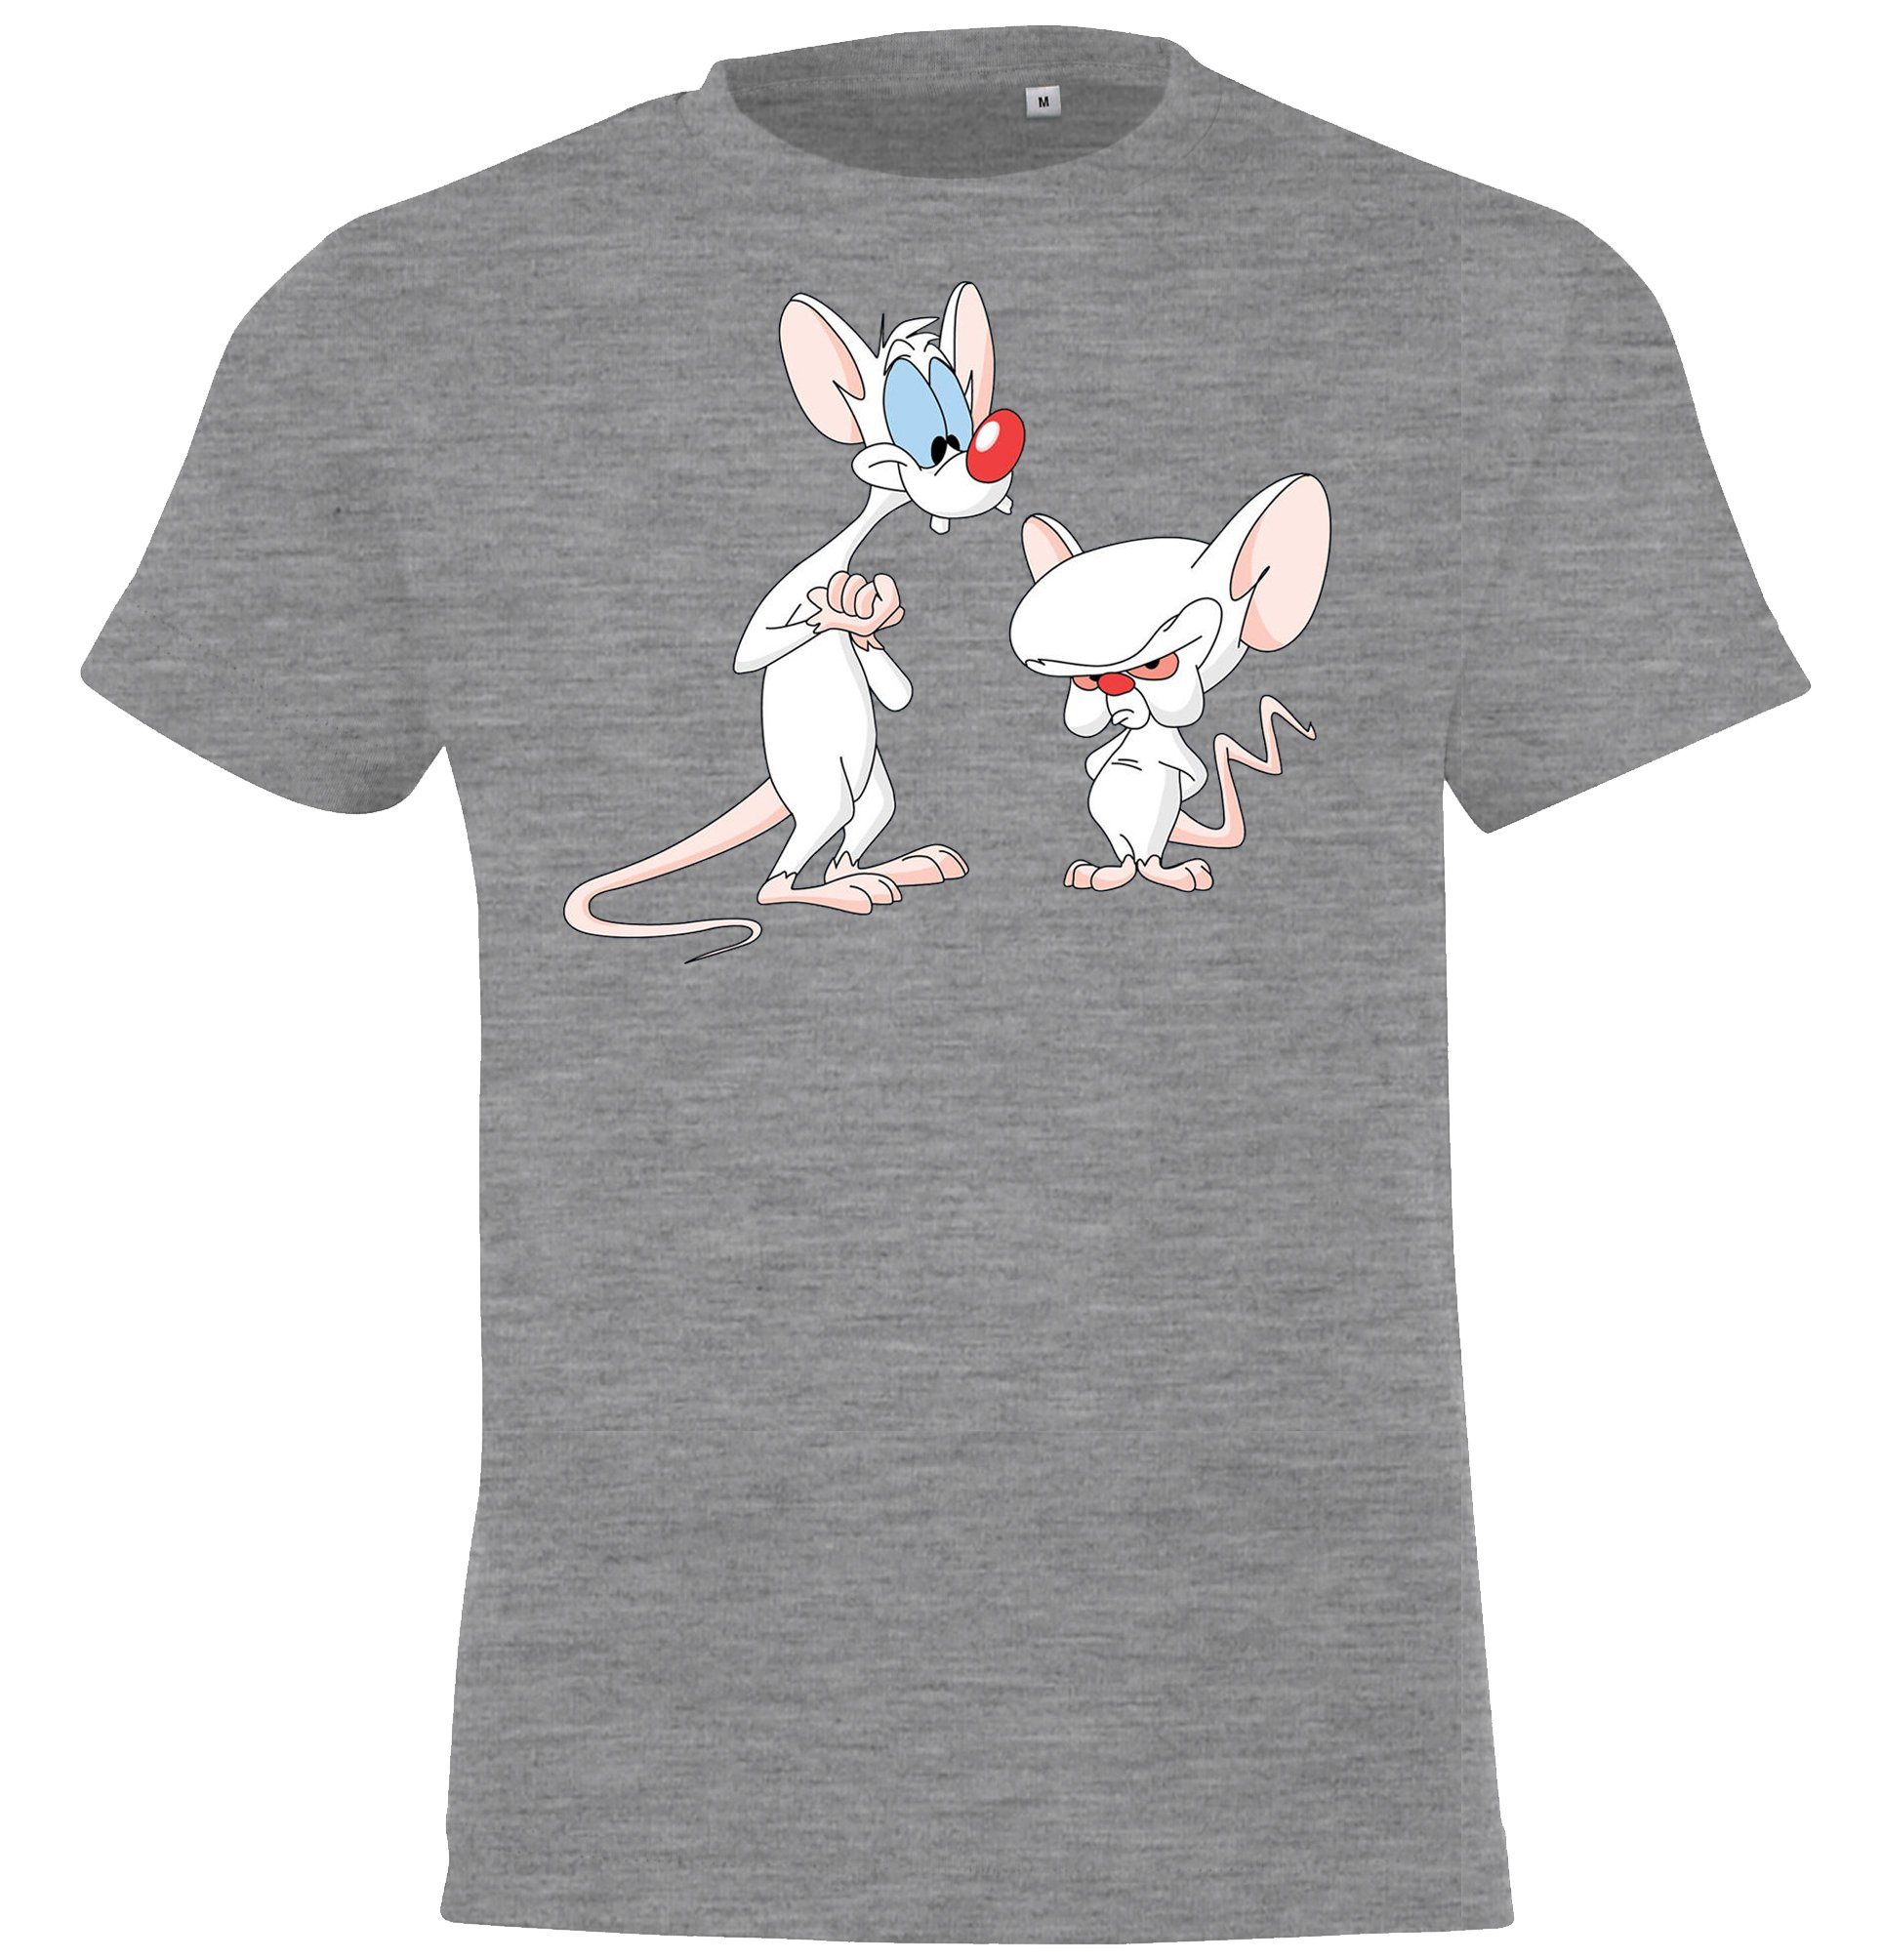 mit Kinder Designz Brain T-Shirt Youth T-Shirt und Grau Modell Pinky Frontprint witzigem